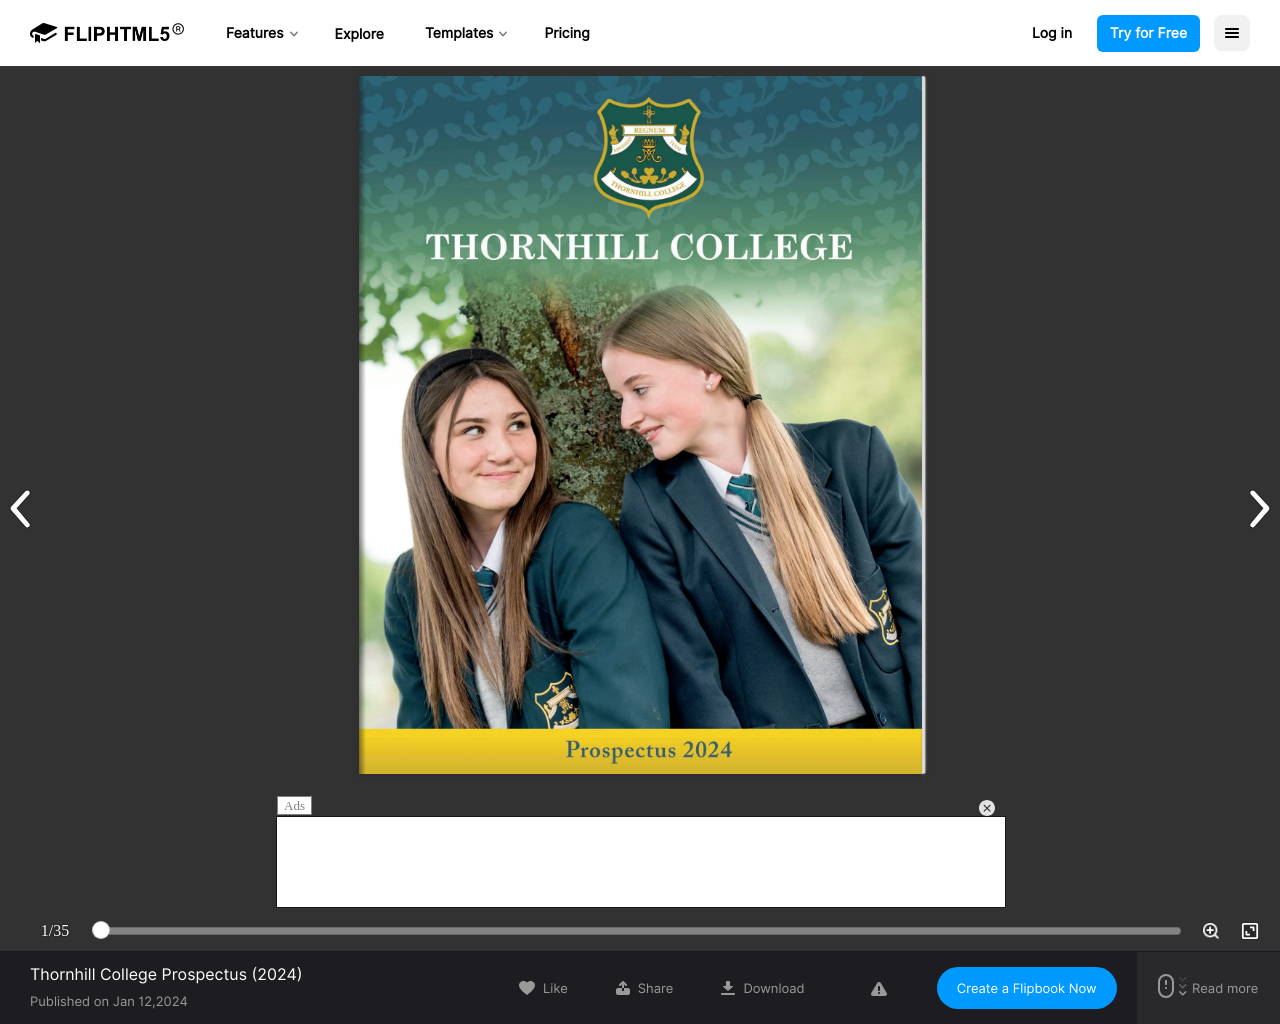 Thornhill College Prospectus 2024